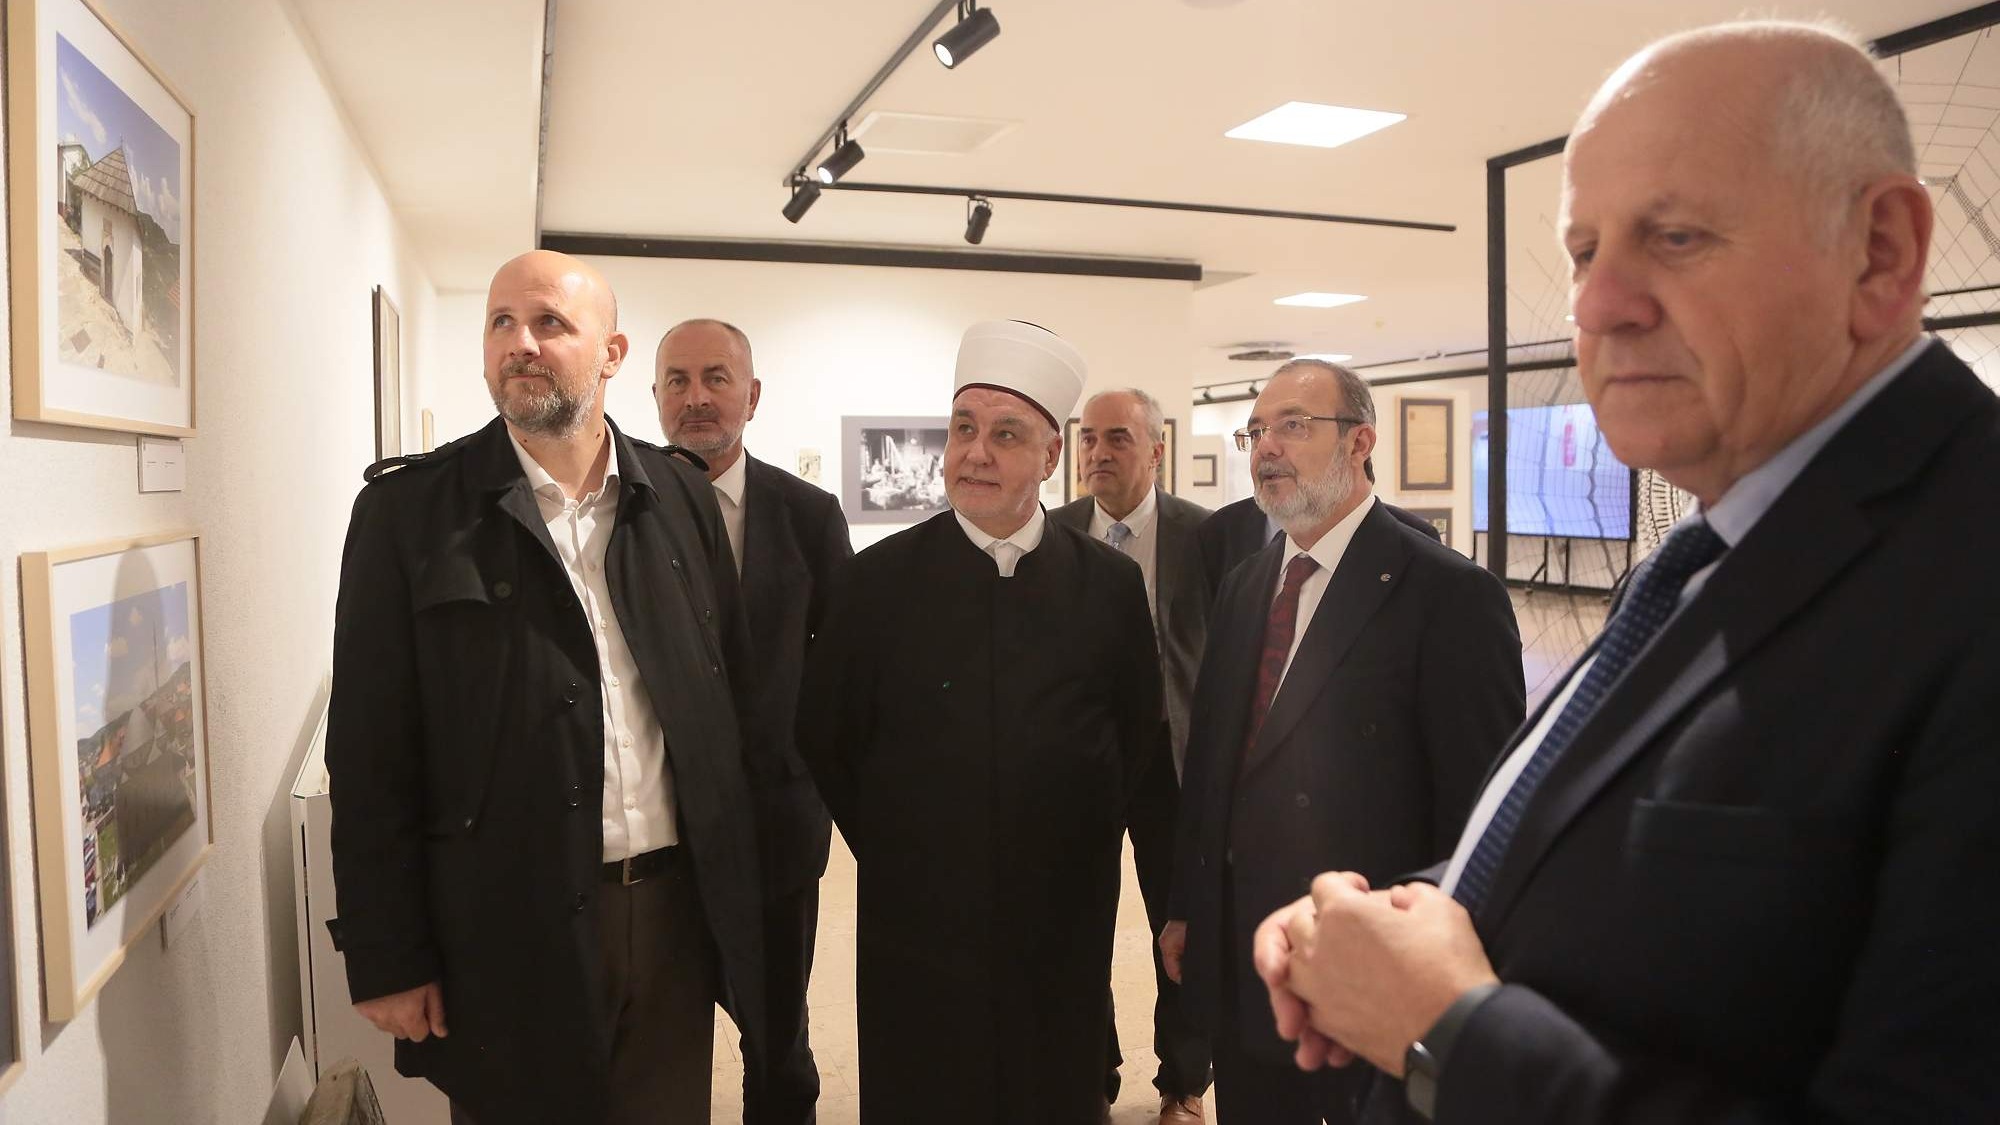 Mehmet Görmez u pratnji reisul-uleme posjetio izložbu "Pod nebom vedre vjere"